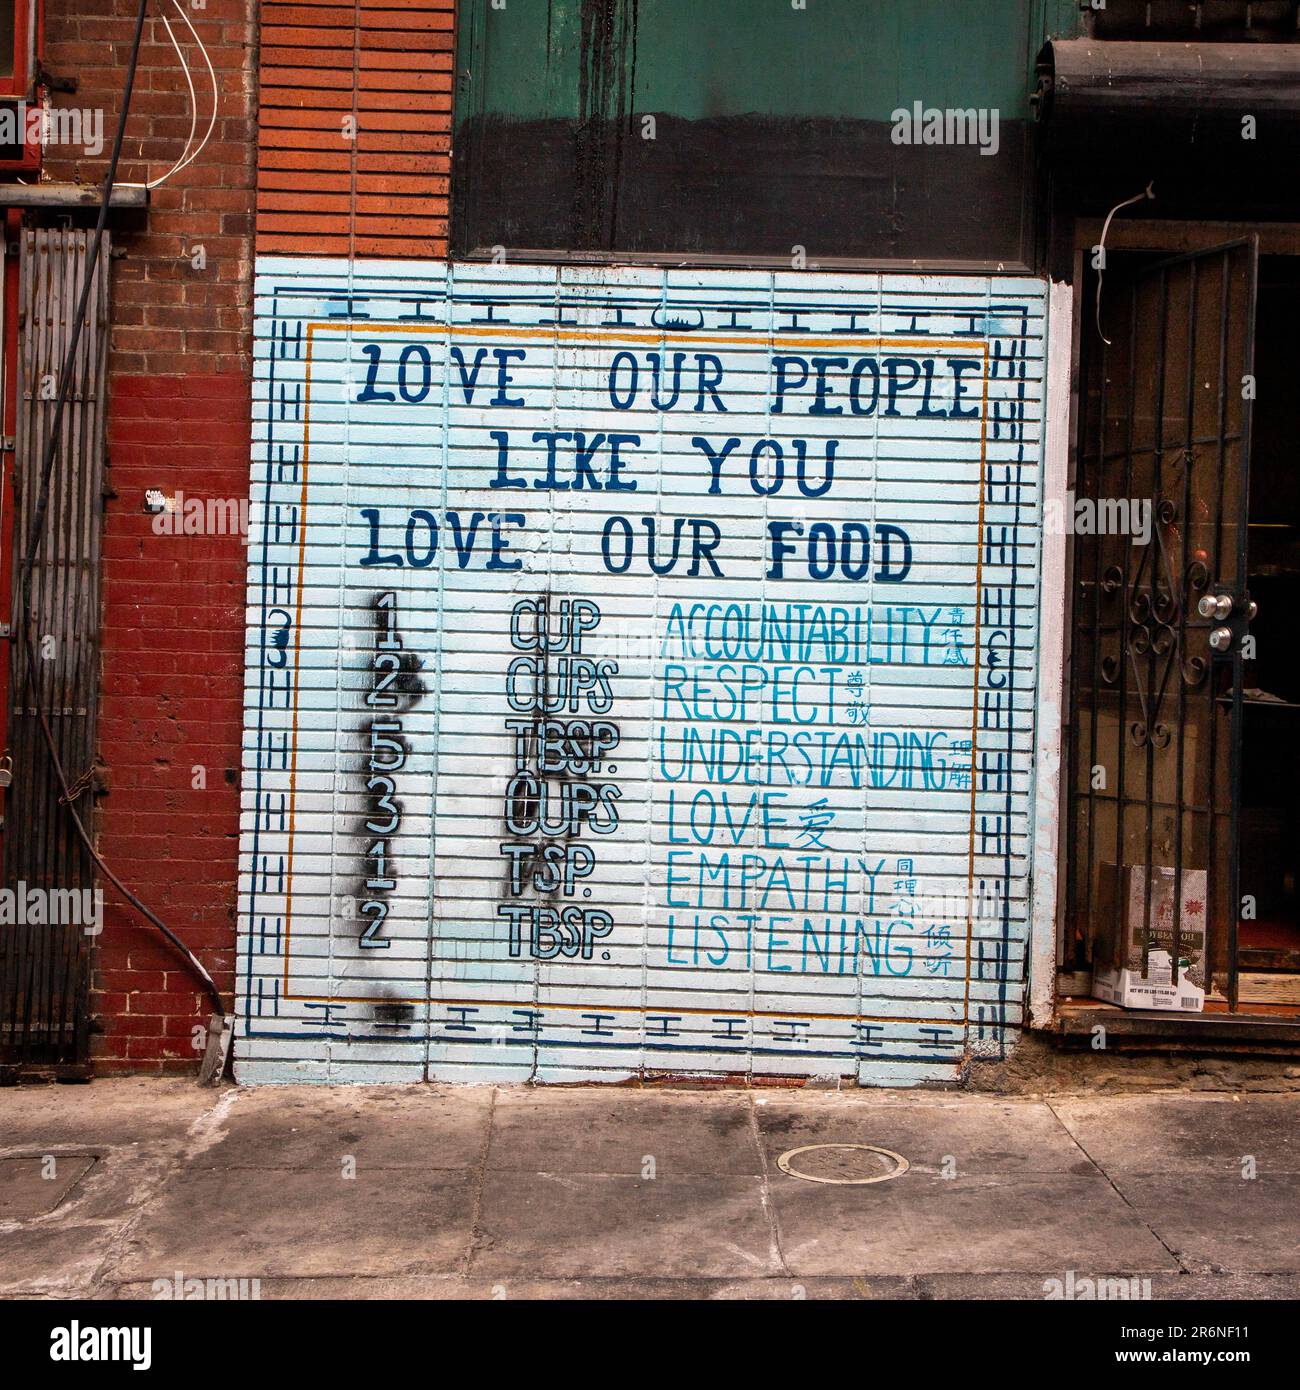 Chinatown in San Francisco, Kalifornien Ein Wandbild über Wentworth, das uns daran erinnert, dass die Menschen, die unser Essen kochen, unsere Liebe verdienen. Stockfoto